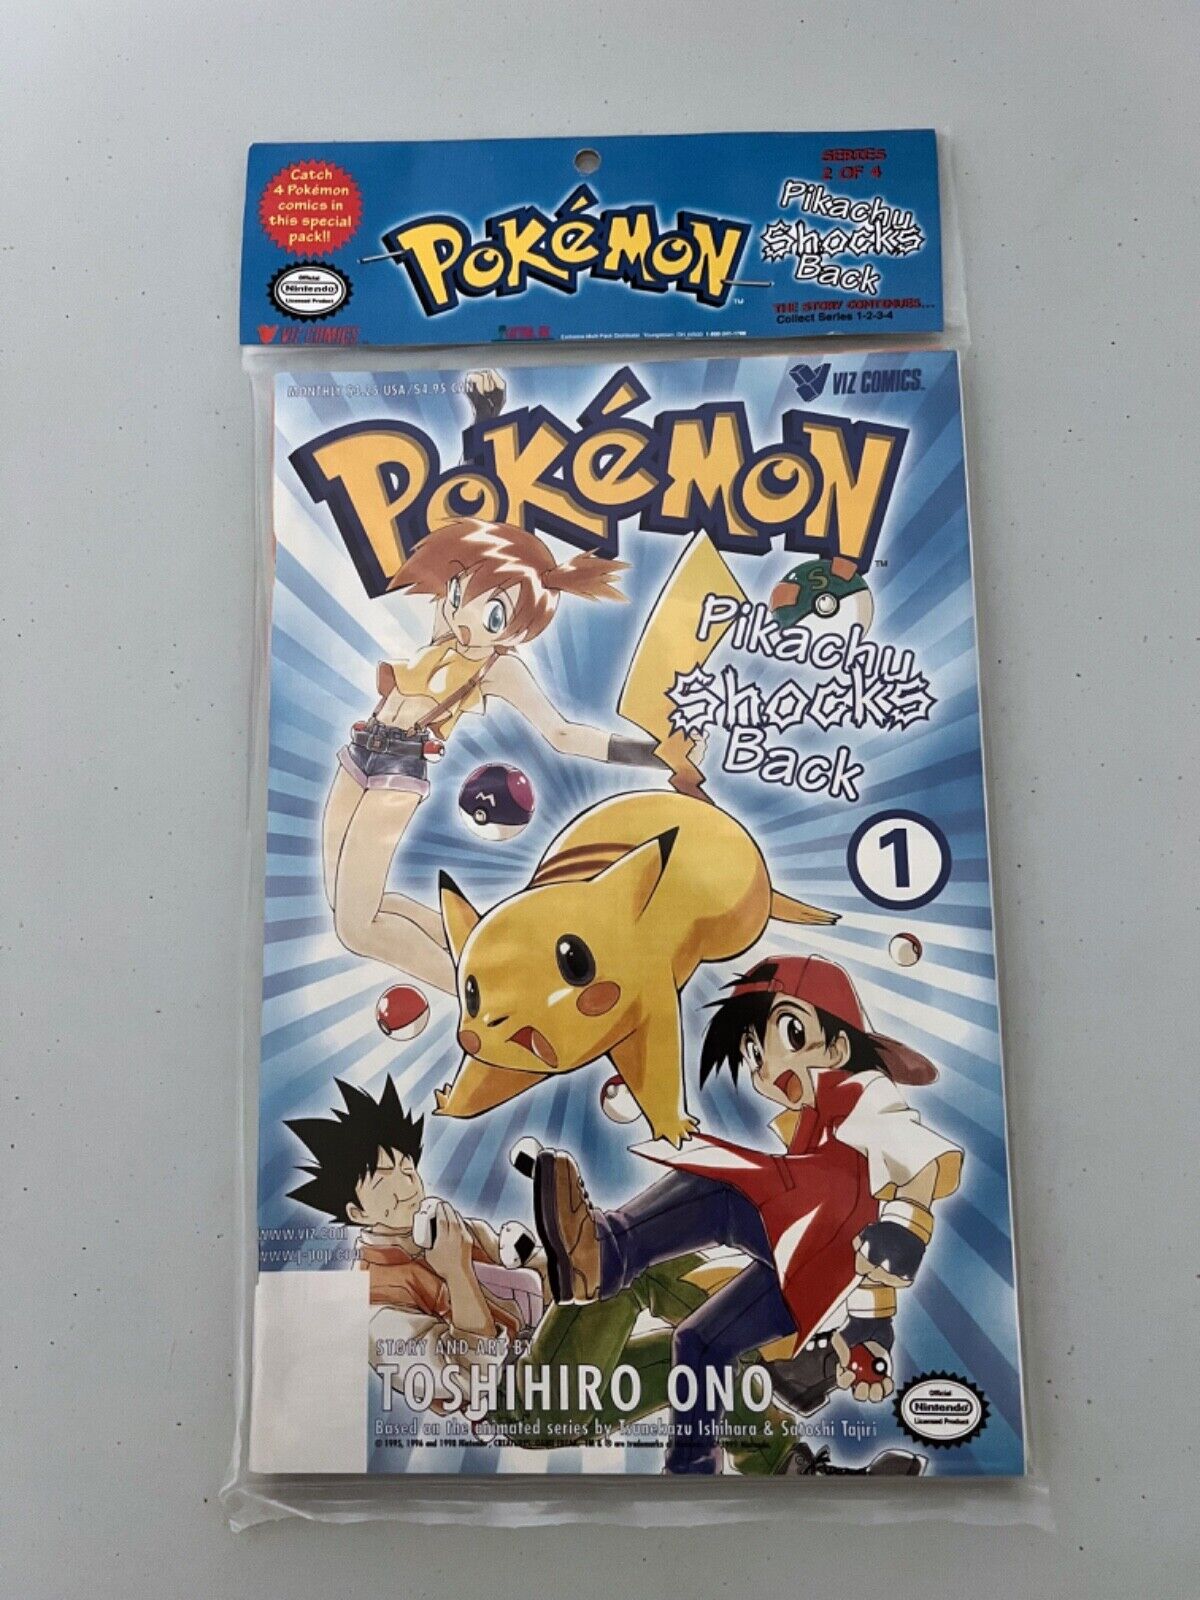 Pokémon: Pikachu Shocks Back #1-4 VIZ 1999 * New & Sealed *